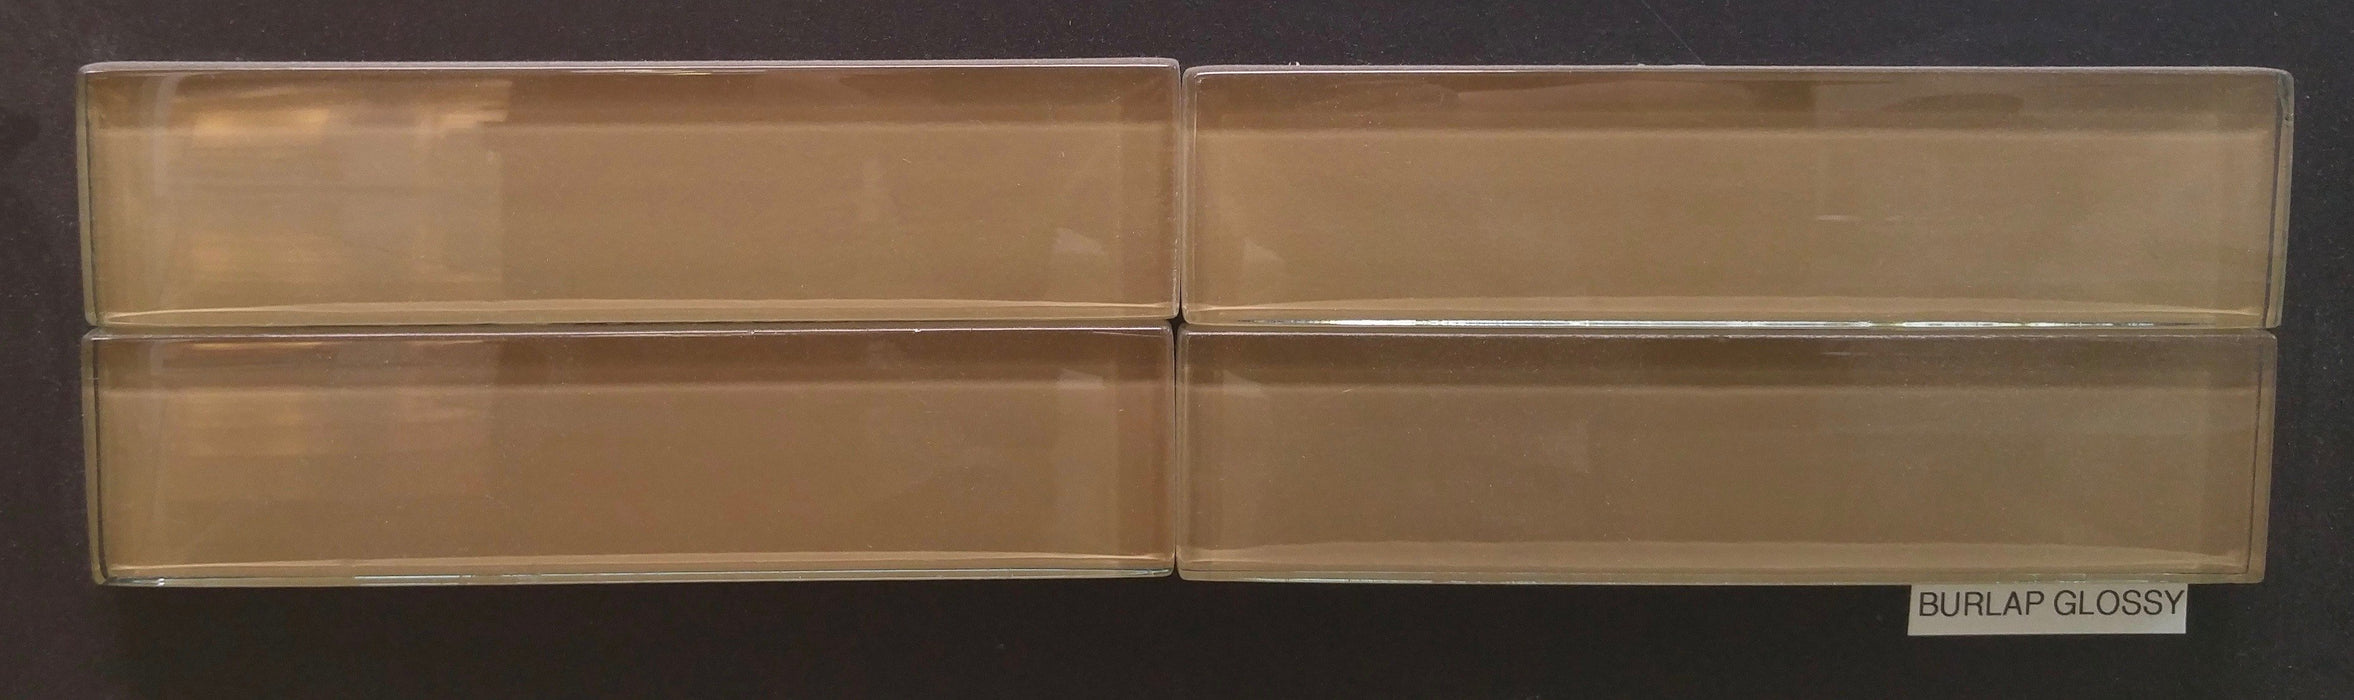 Full Tile Sample - Burlap Glass Tile - 1.8" x 7.8" x 1/2" Glossy